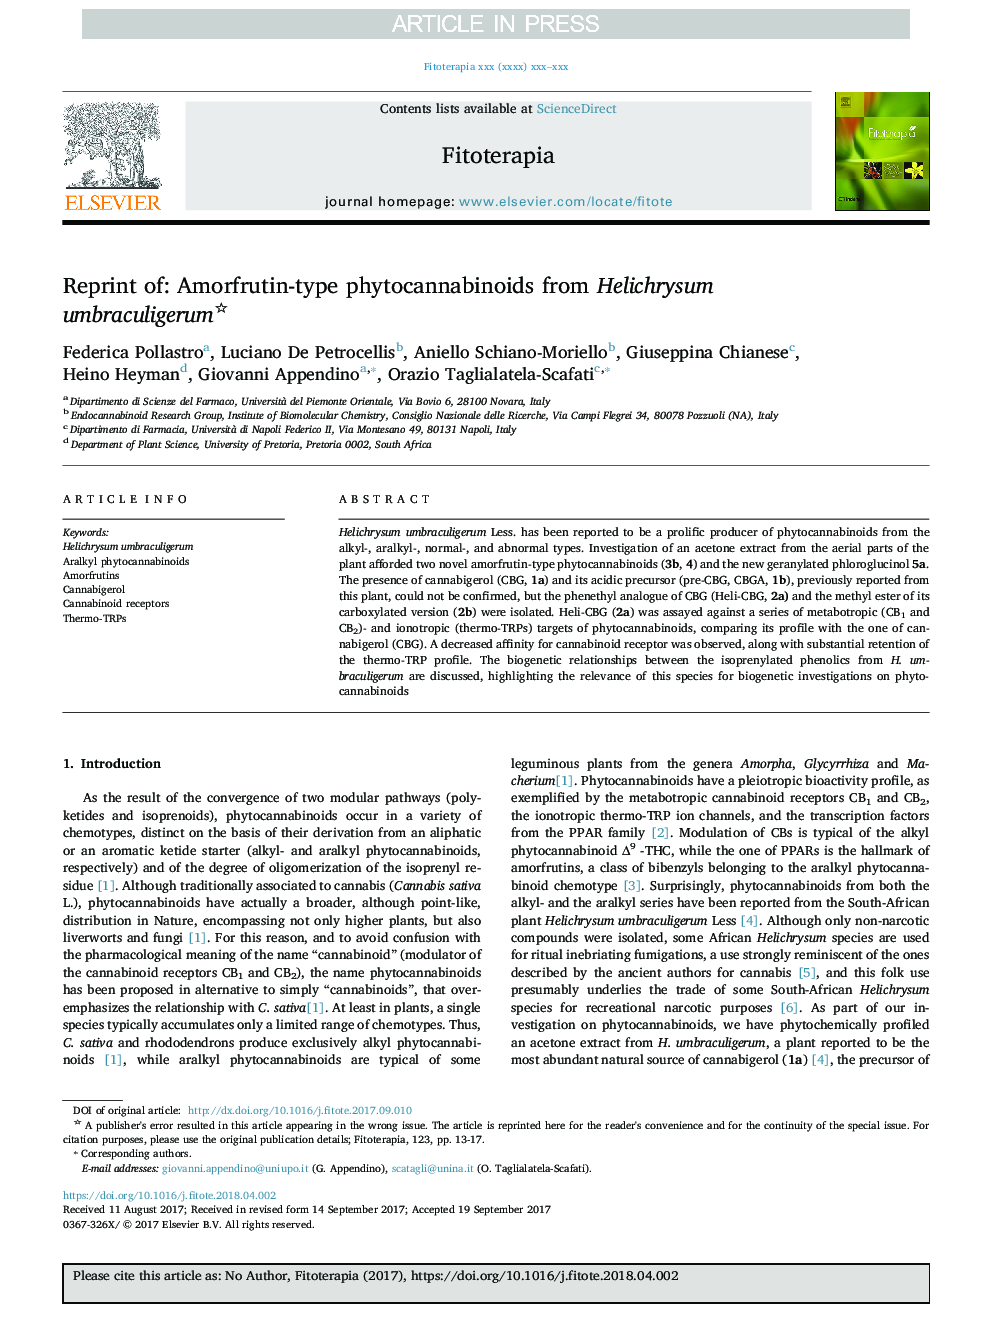 Reprint of: Amorfrutin-type phytocannabinoids from Helichrysum umbraculigerum